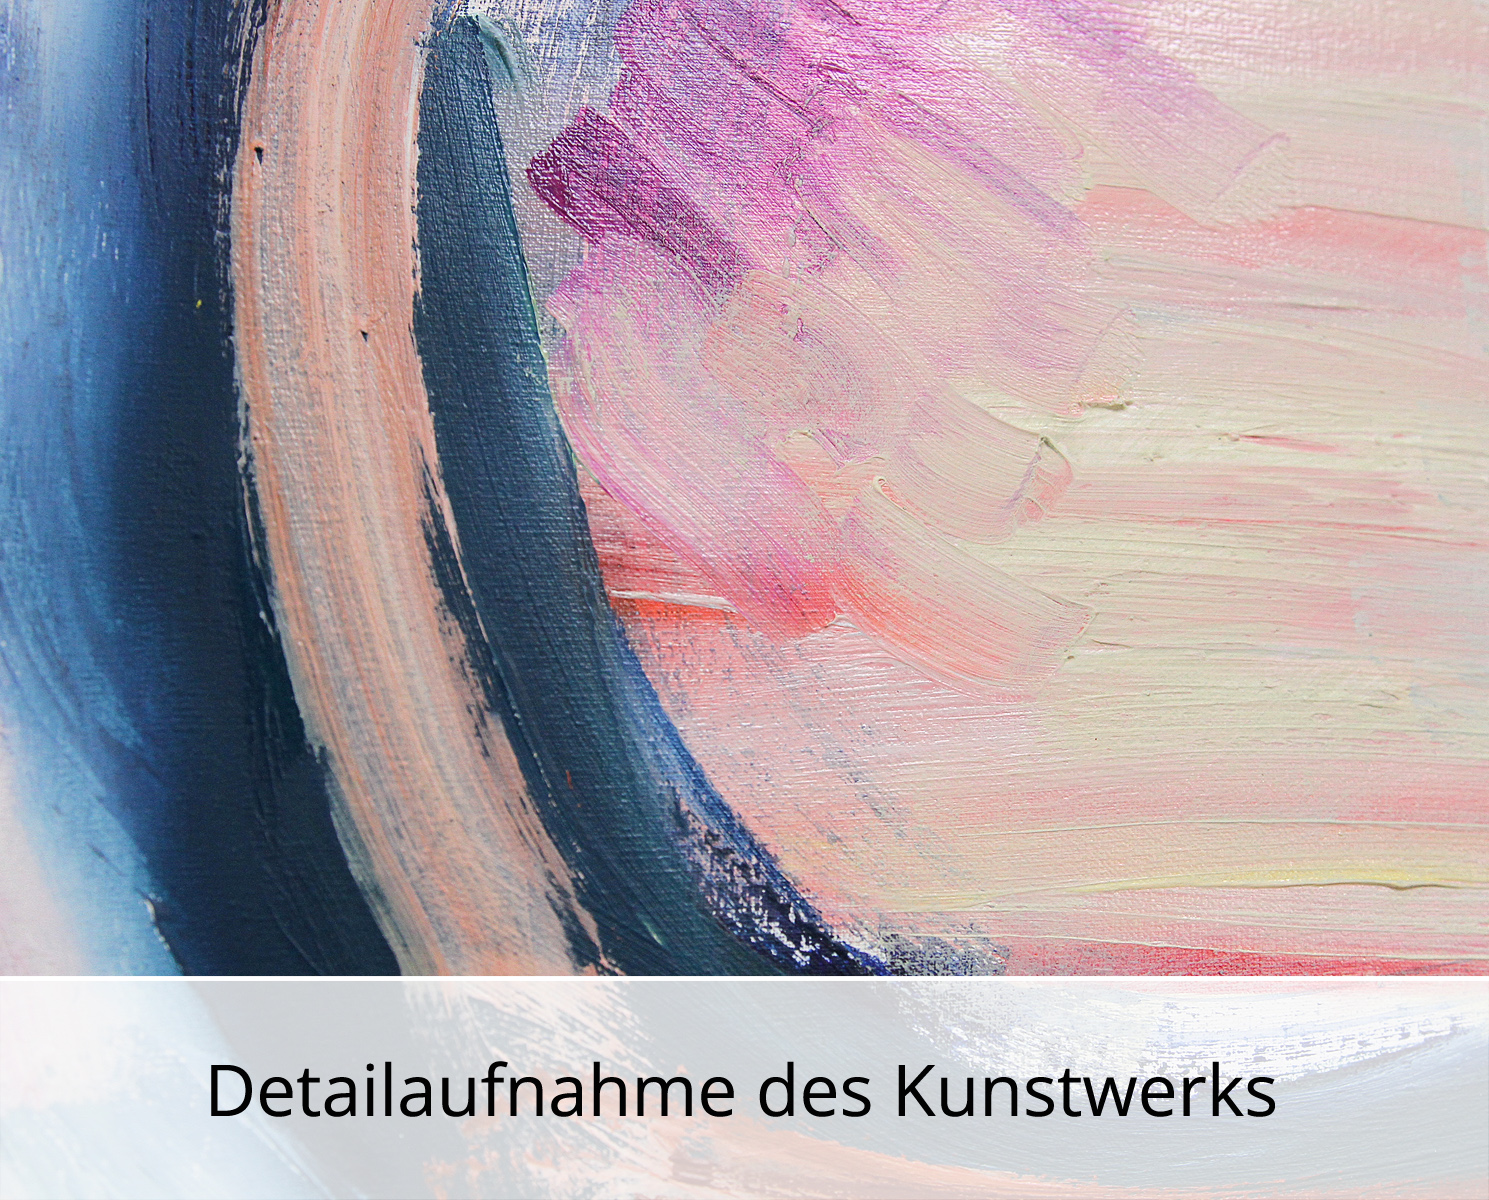 M. Cieśla: "Abstrakte Komposition 44", Original/Unikat, Expressionistisches Ölgemälde